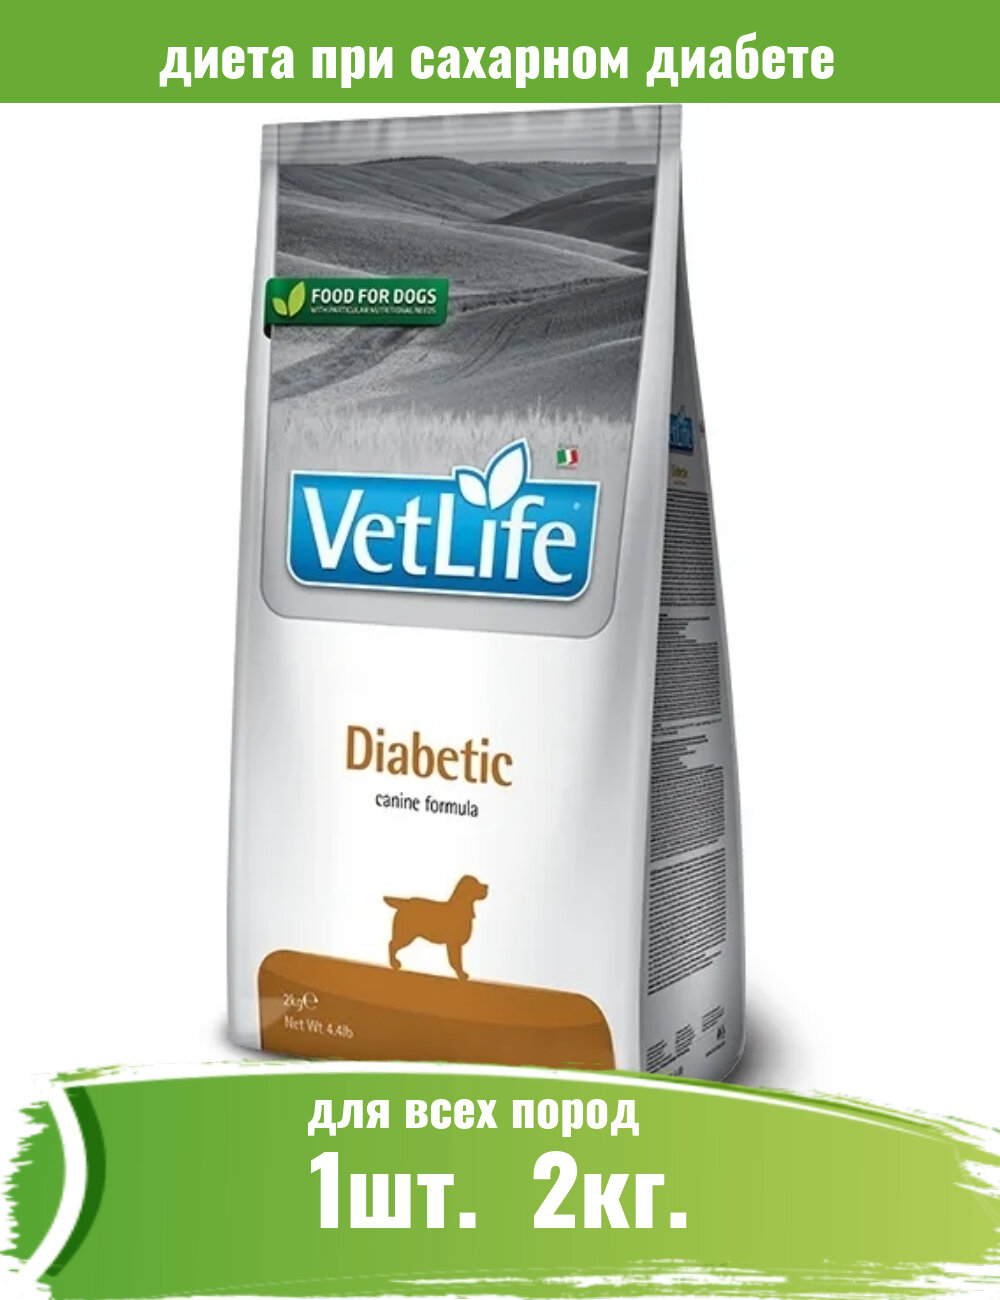 Сухой диетический корм Farmina Vet Life для взрослых собак Diabetic, курица, 2кг - фото №16